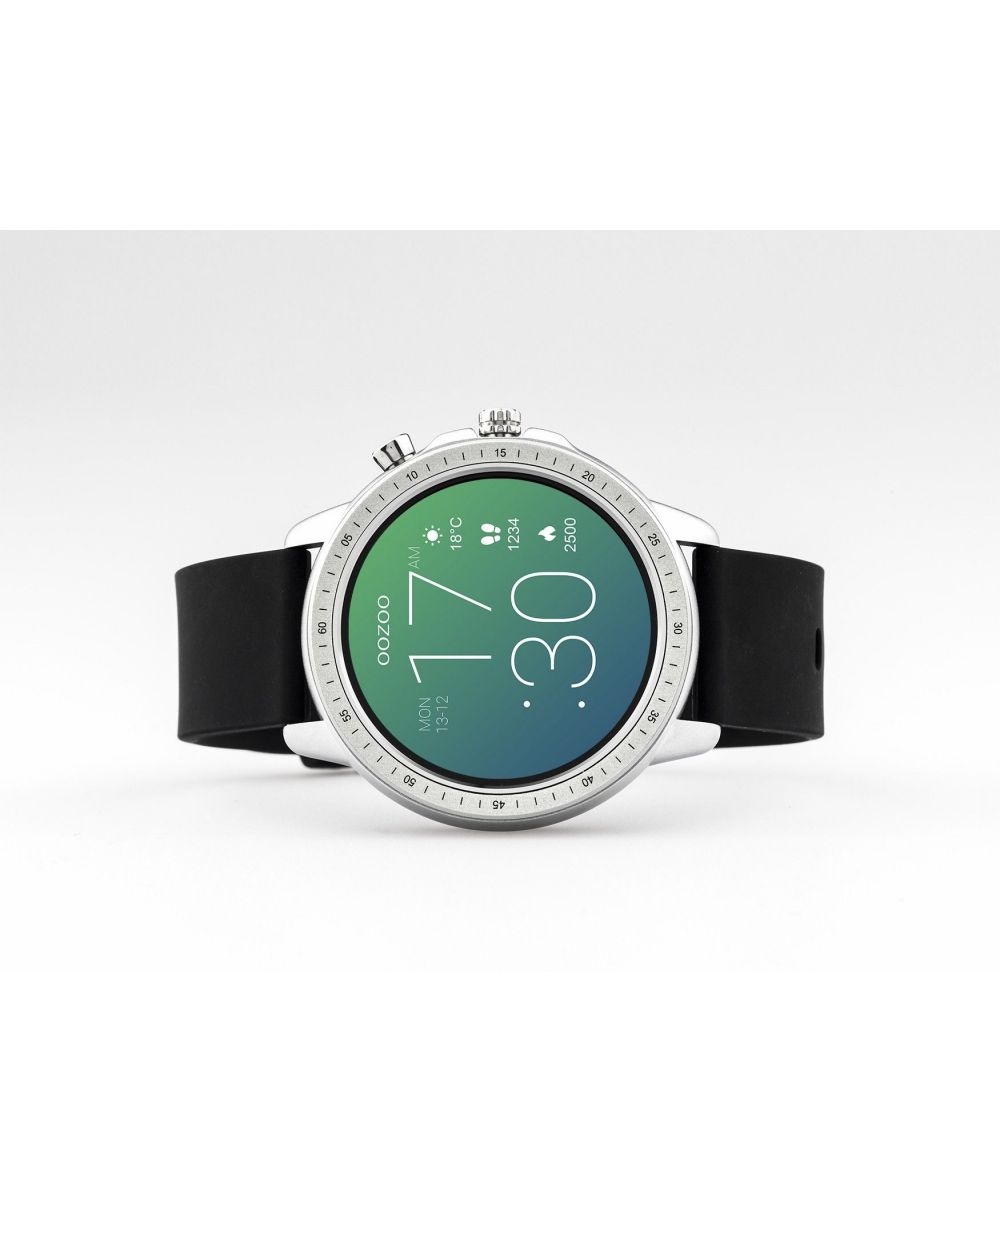 Montre Oozoo Q00300 - Smartwatch - Marque OOZOO - Livraison gratuite